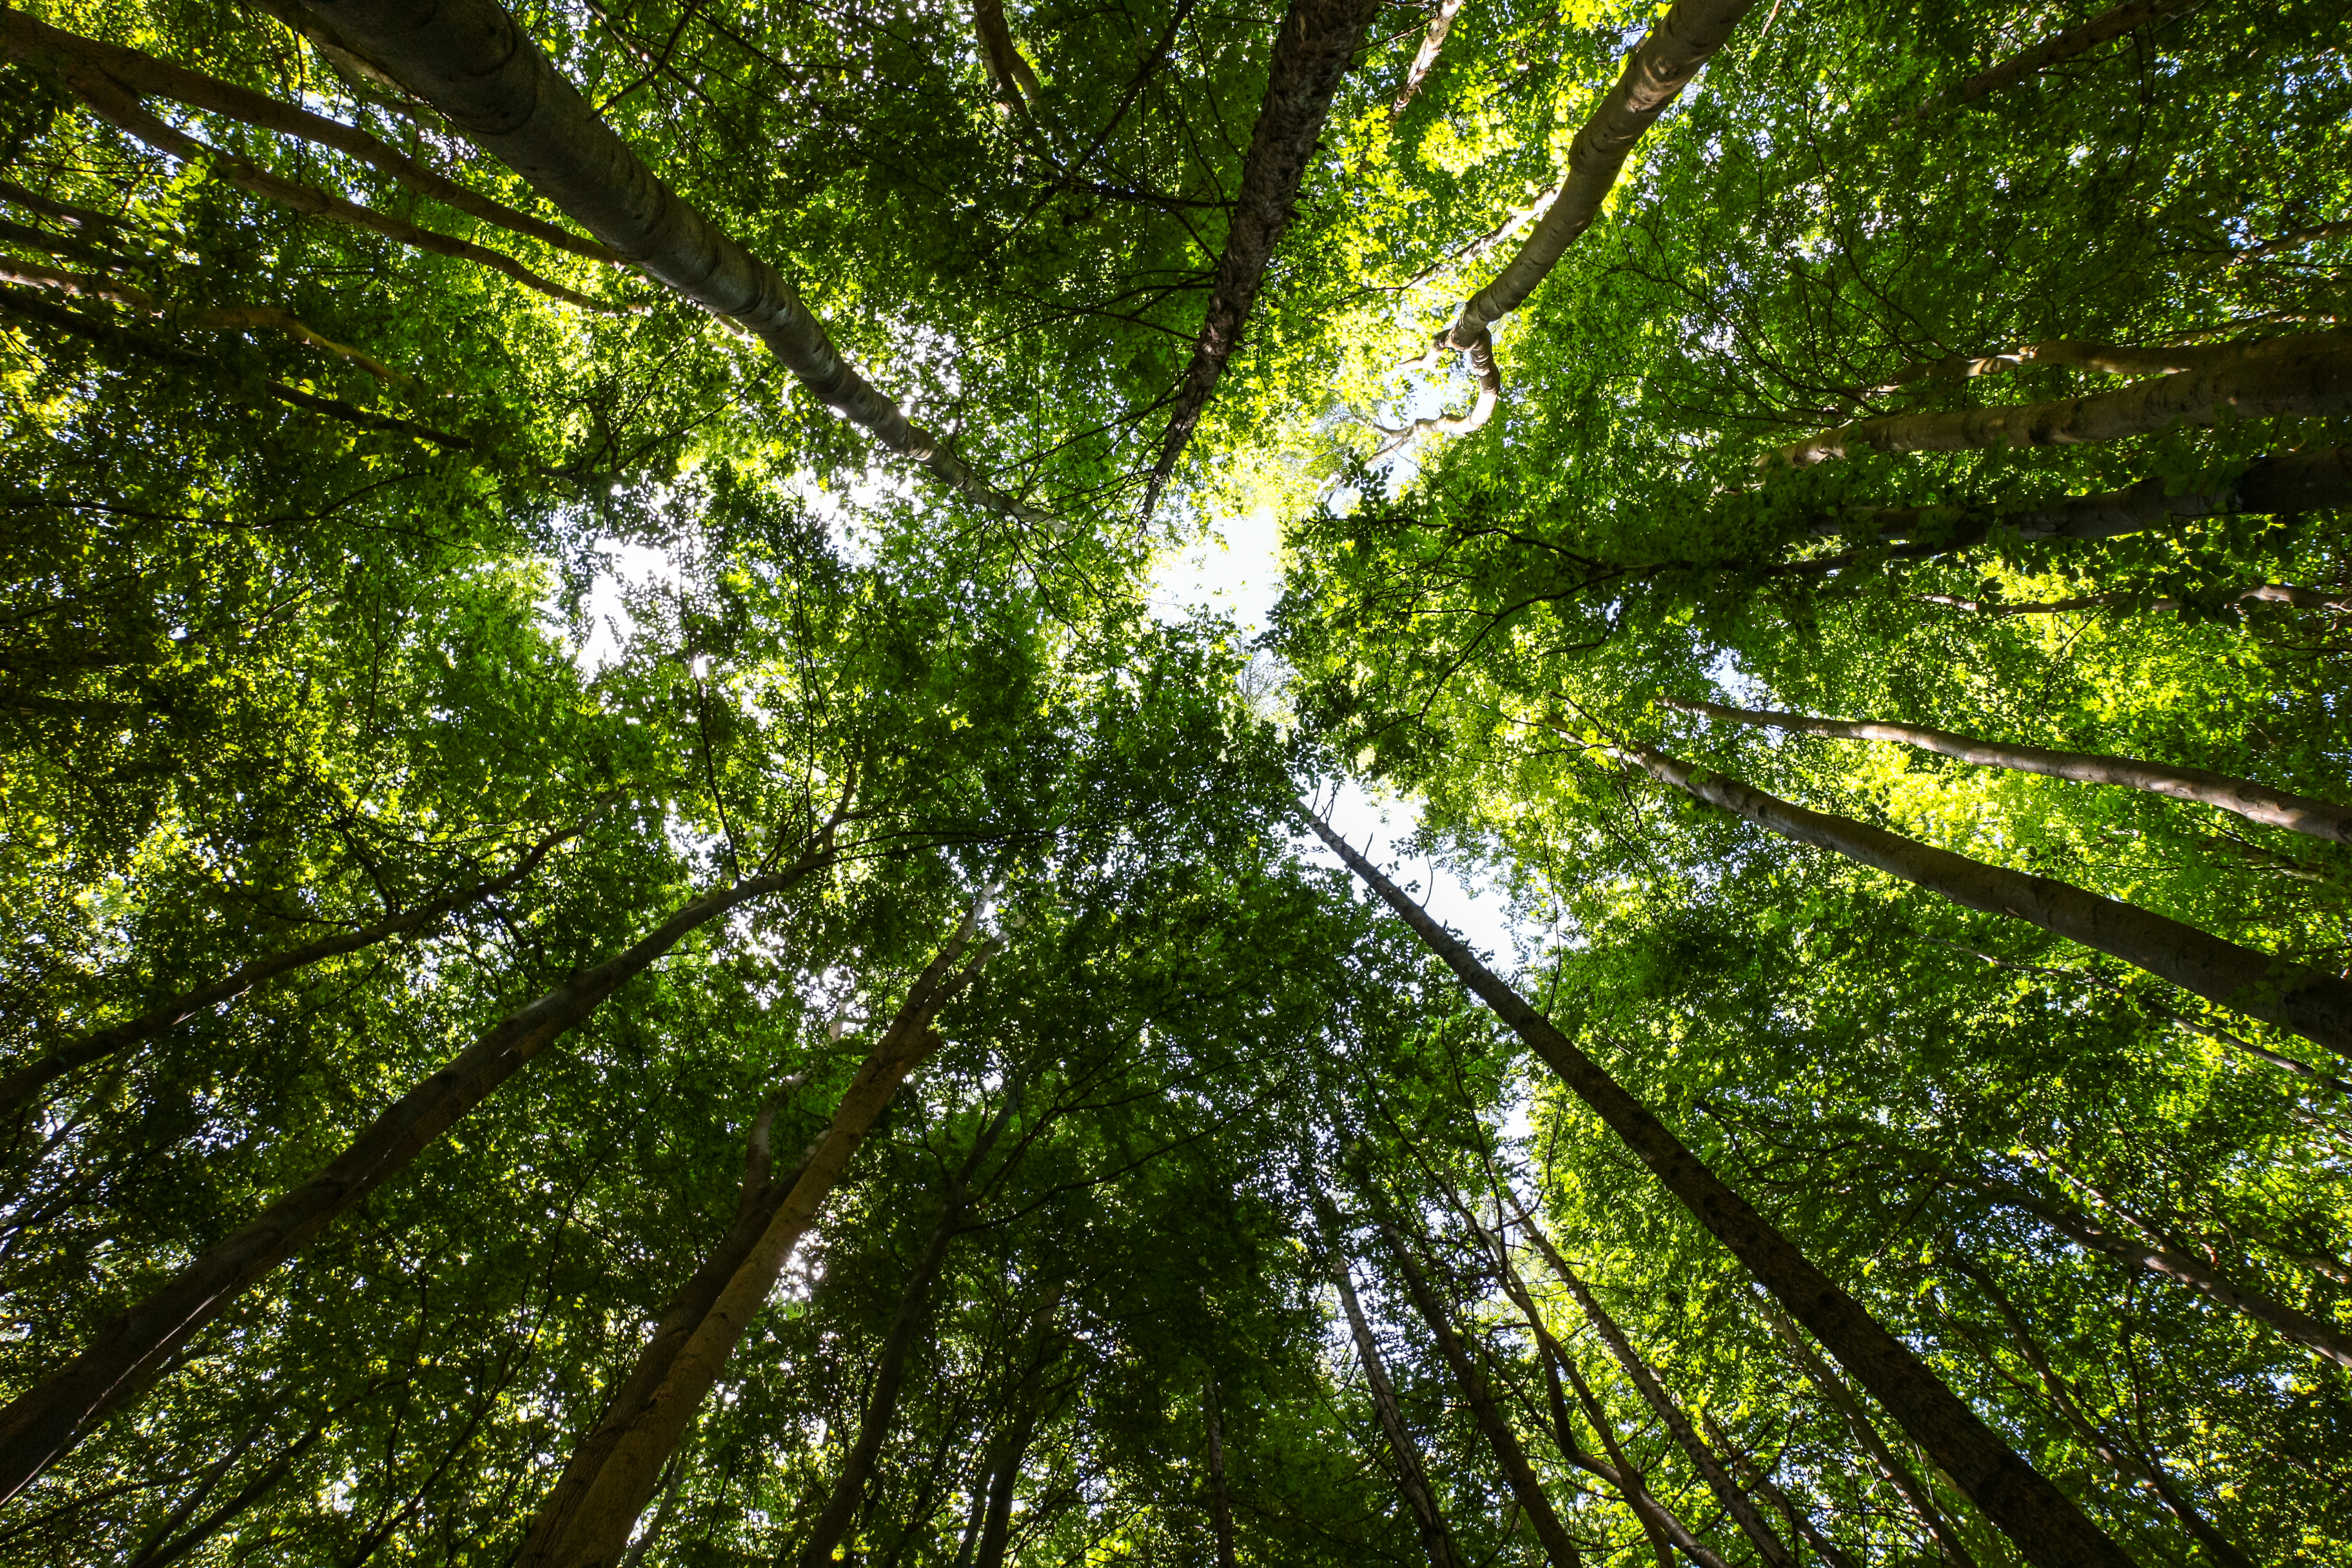 Osobitná správa 21/2021: Financovanie EÚ v súvislosti s  biodiverzitou a zmenou klímy v lesoch EÚ: pozitívne, ale obmedzené výsledky